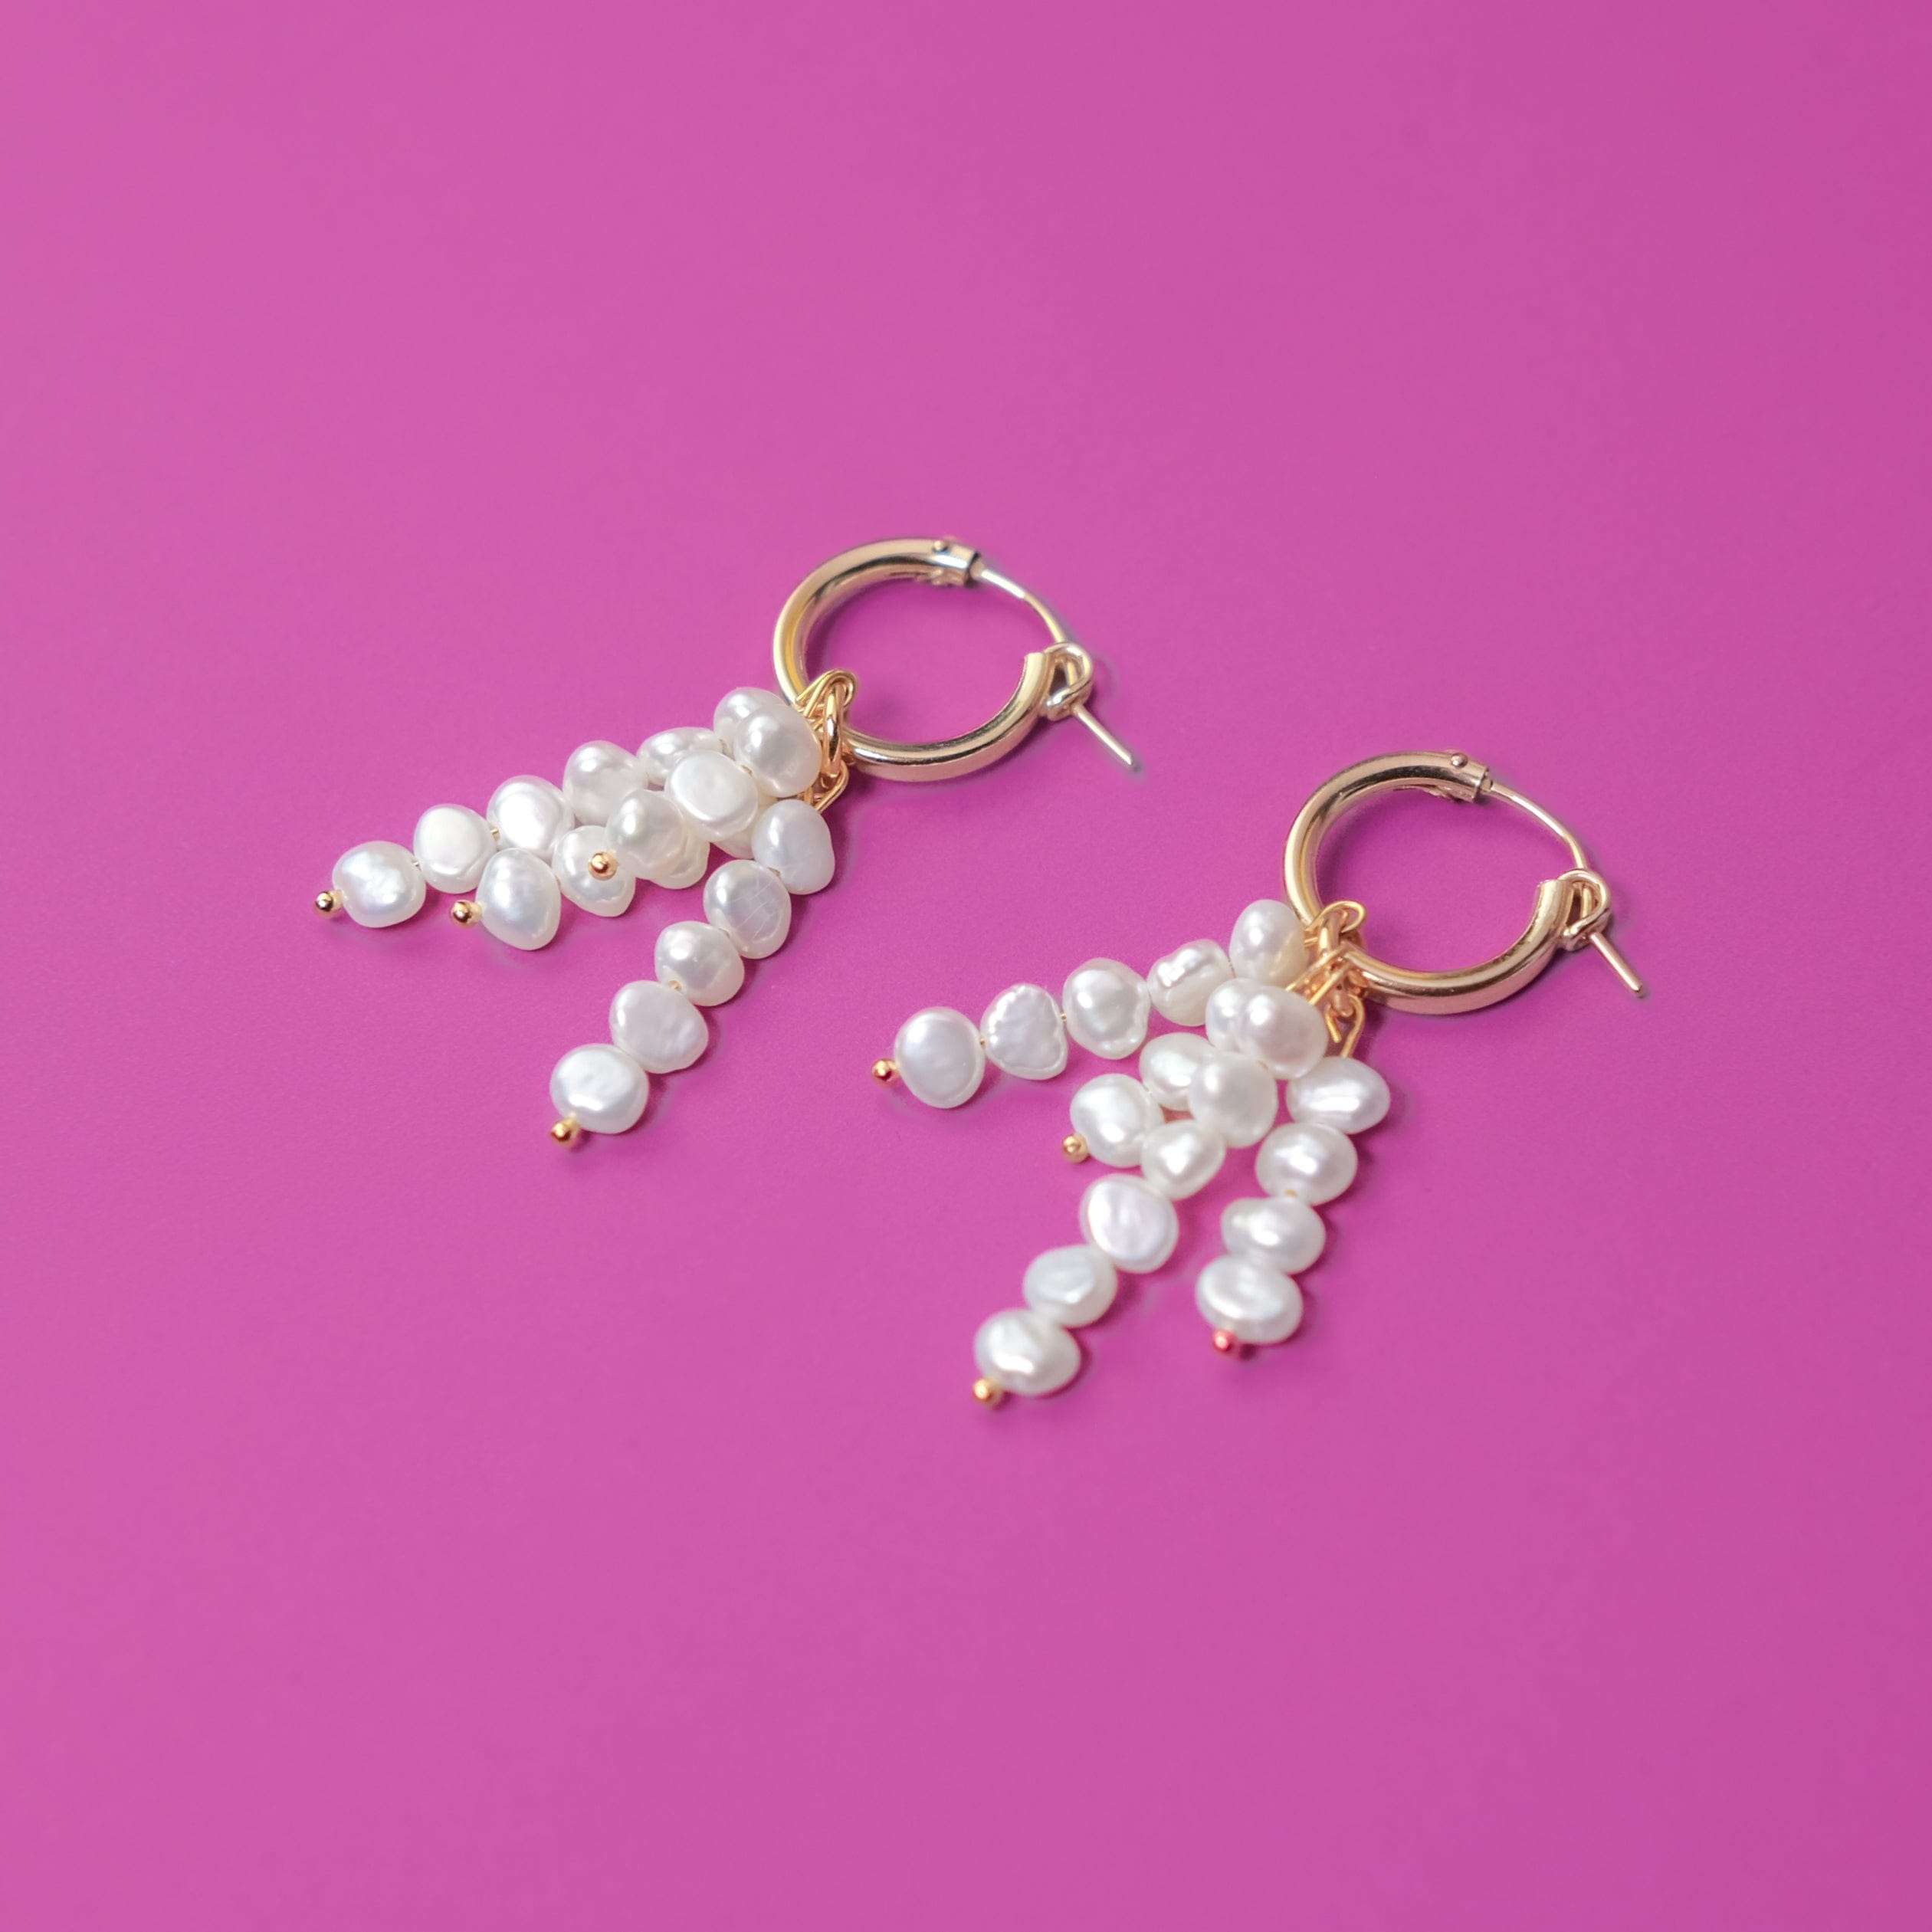 Elegant and fun freshwater pearl tassel earrings on 14k gold filled hoops